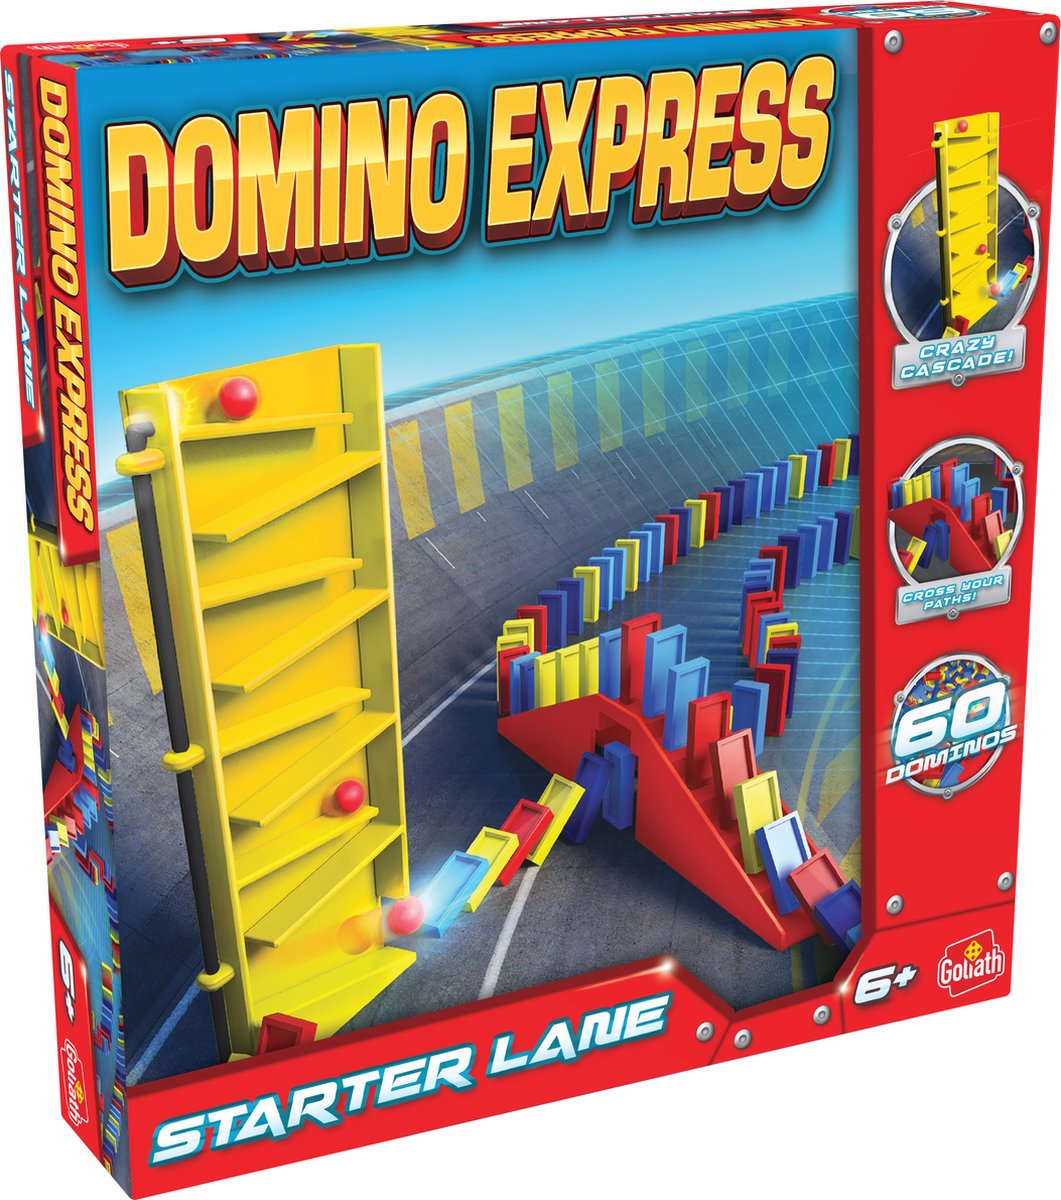 Domino Express Starter Lane – Bouwset